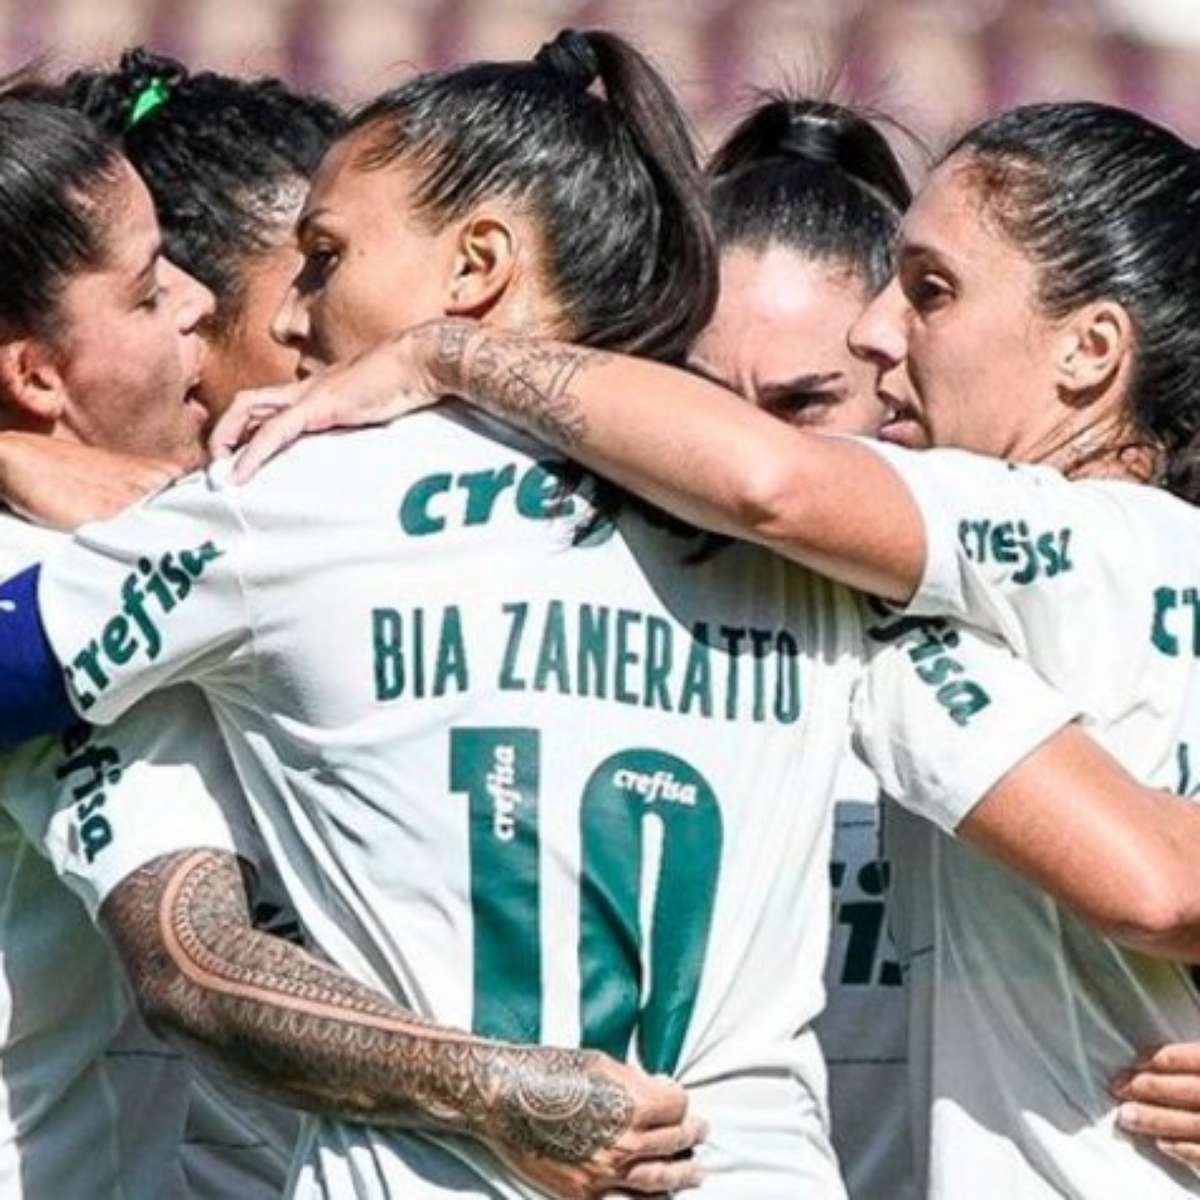 Eleven Sports transmitirá Brasileirão feminino séries A2 e A3 gratuitamente  - MKT Esportivo